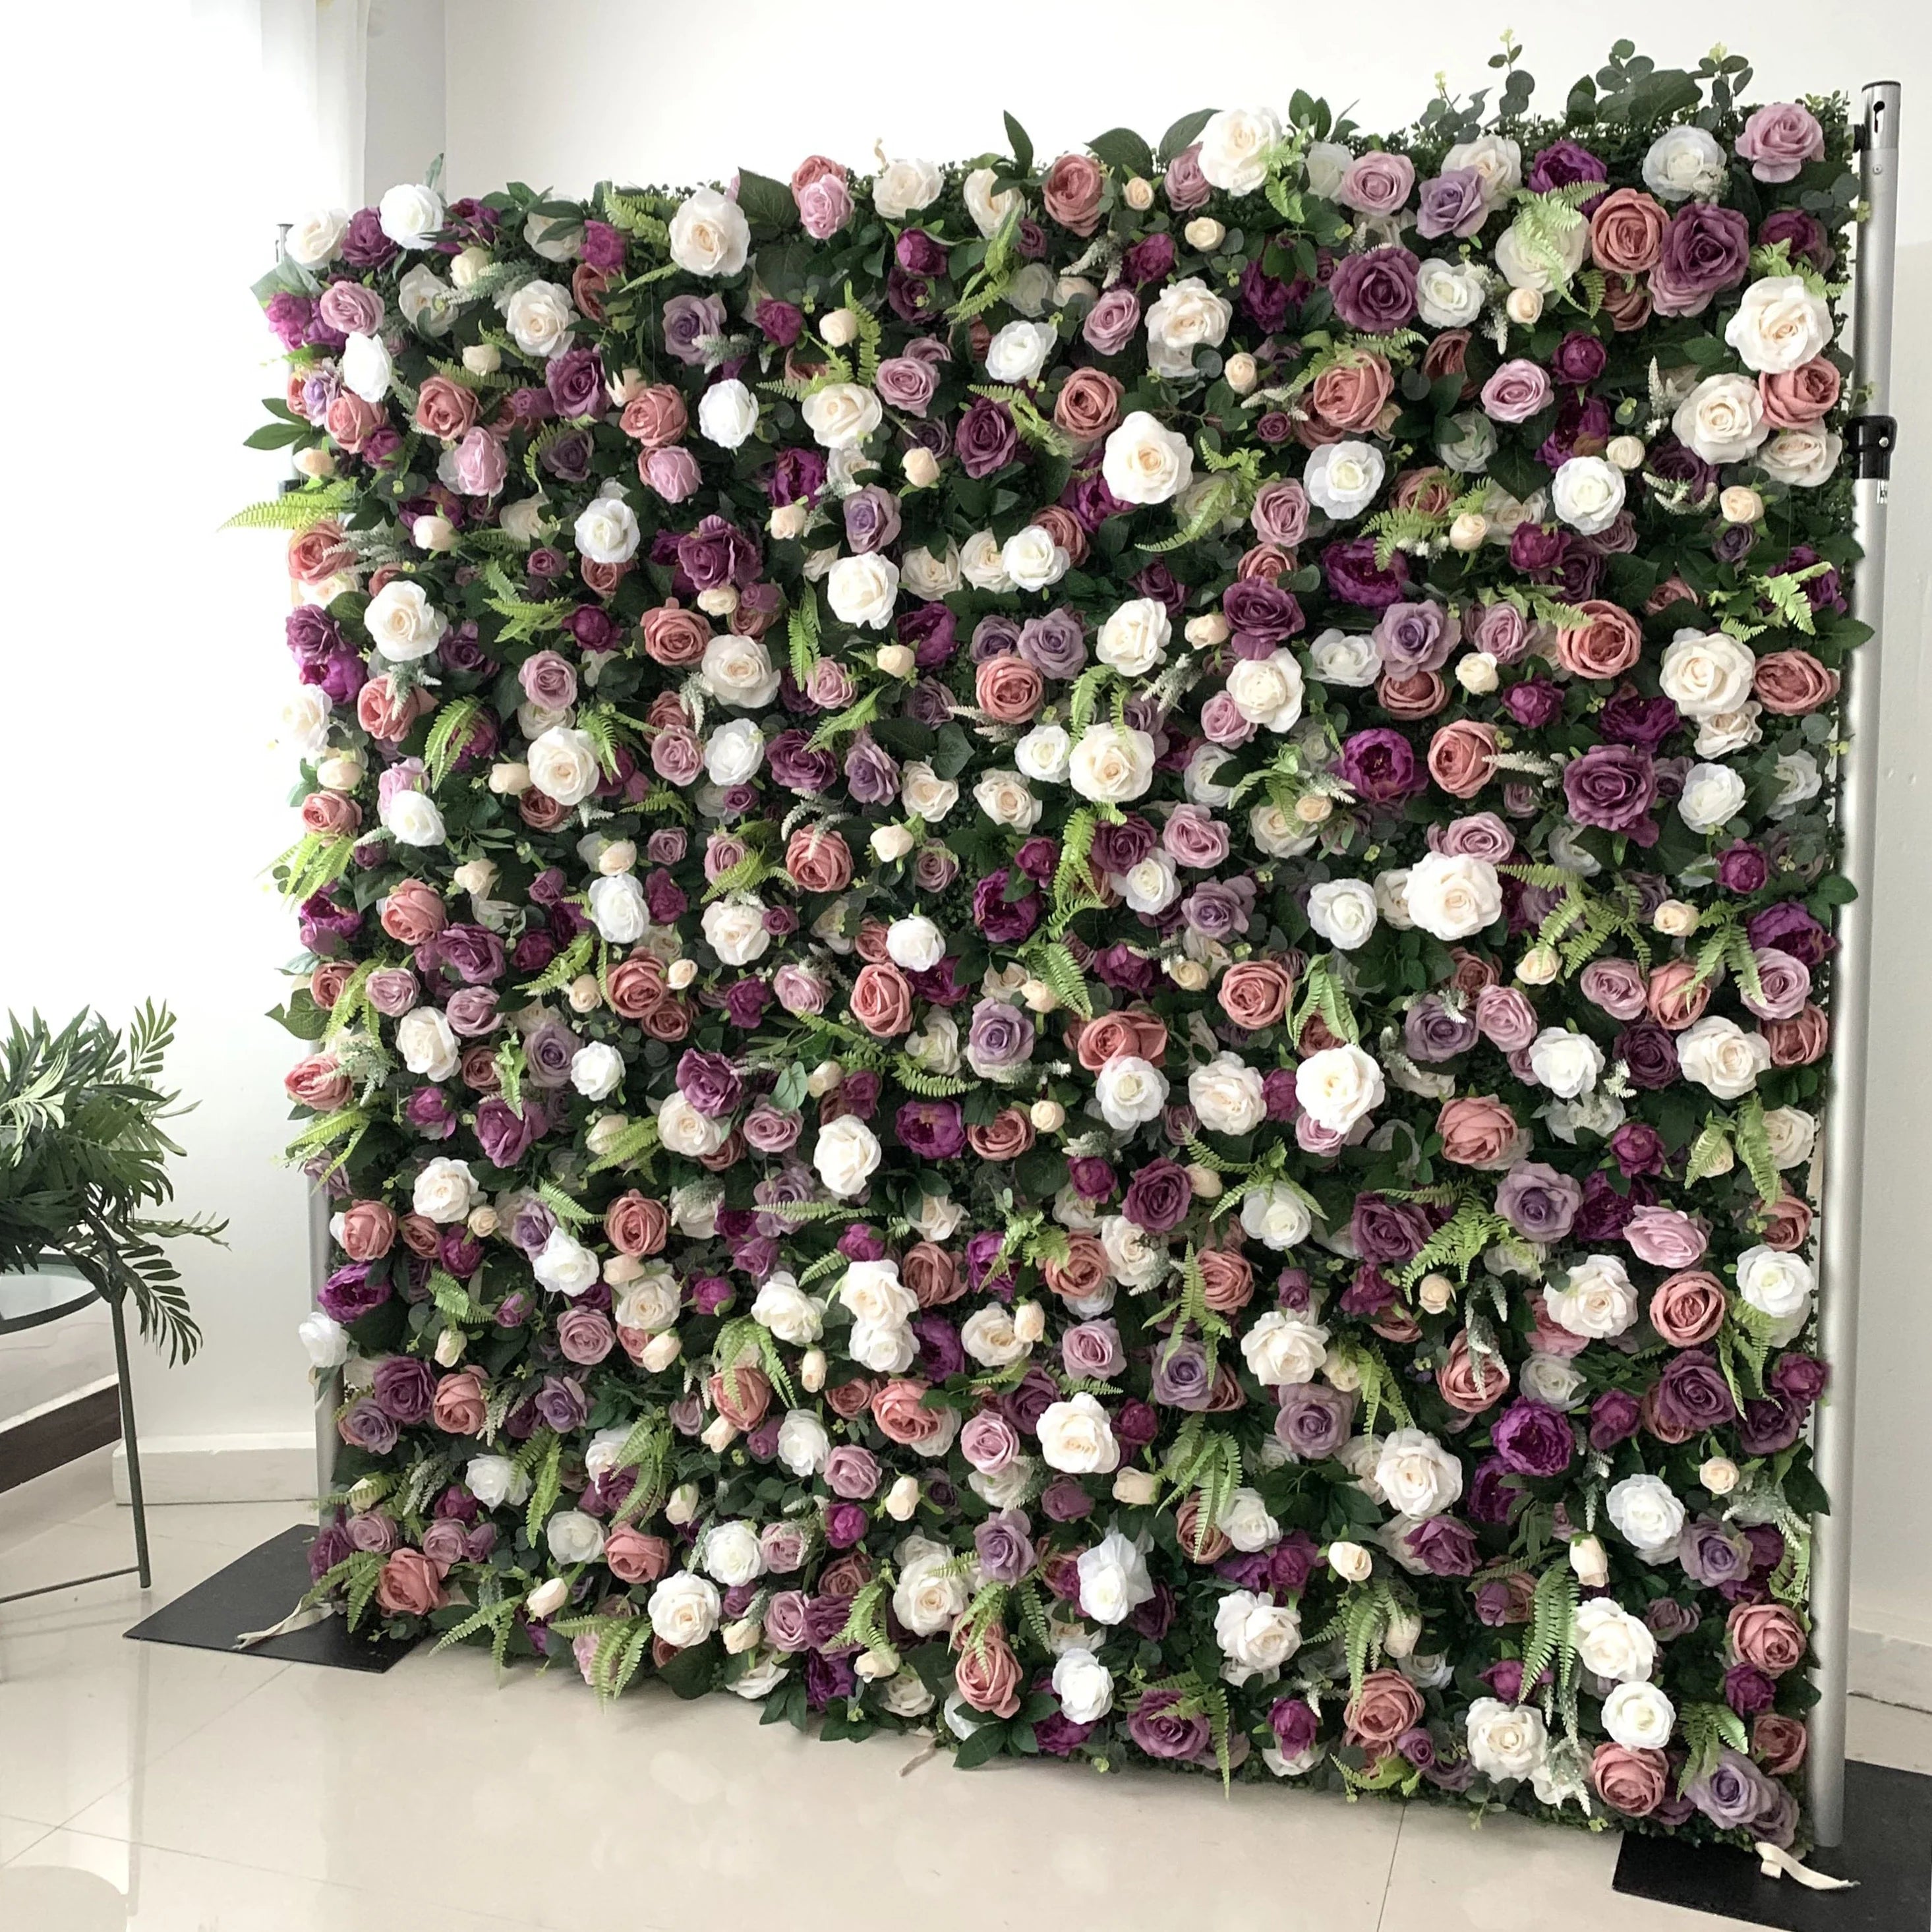 Magnifique mur de fleurs artificielles en tissu enroulé 3D magenta et rose – Parfait pour les mariages en forêt, les événements et la décoration de la maison - VF-154 